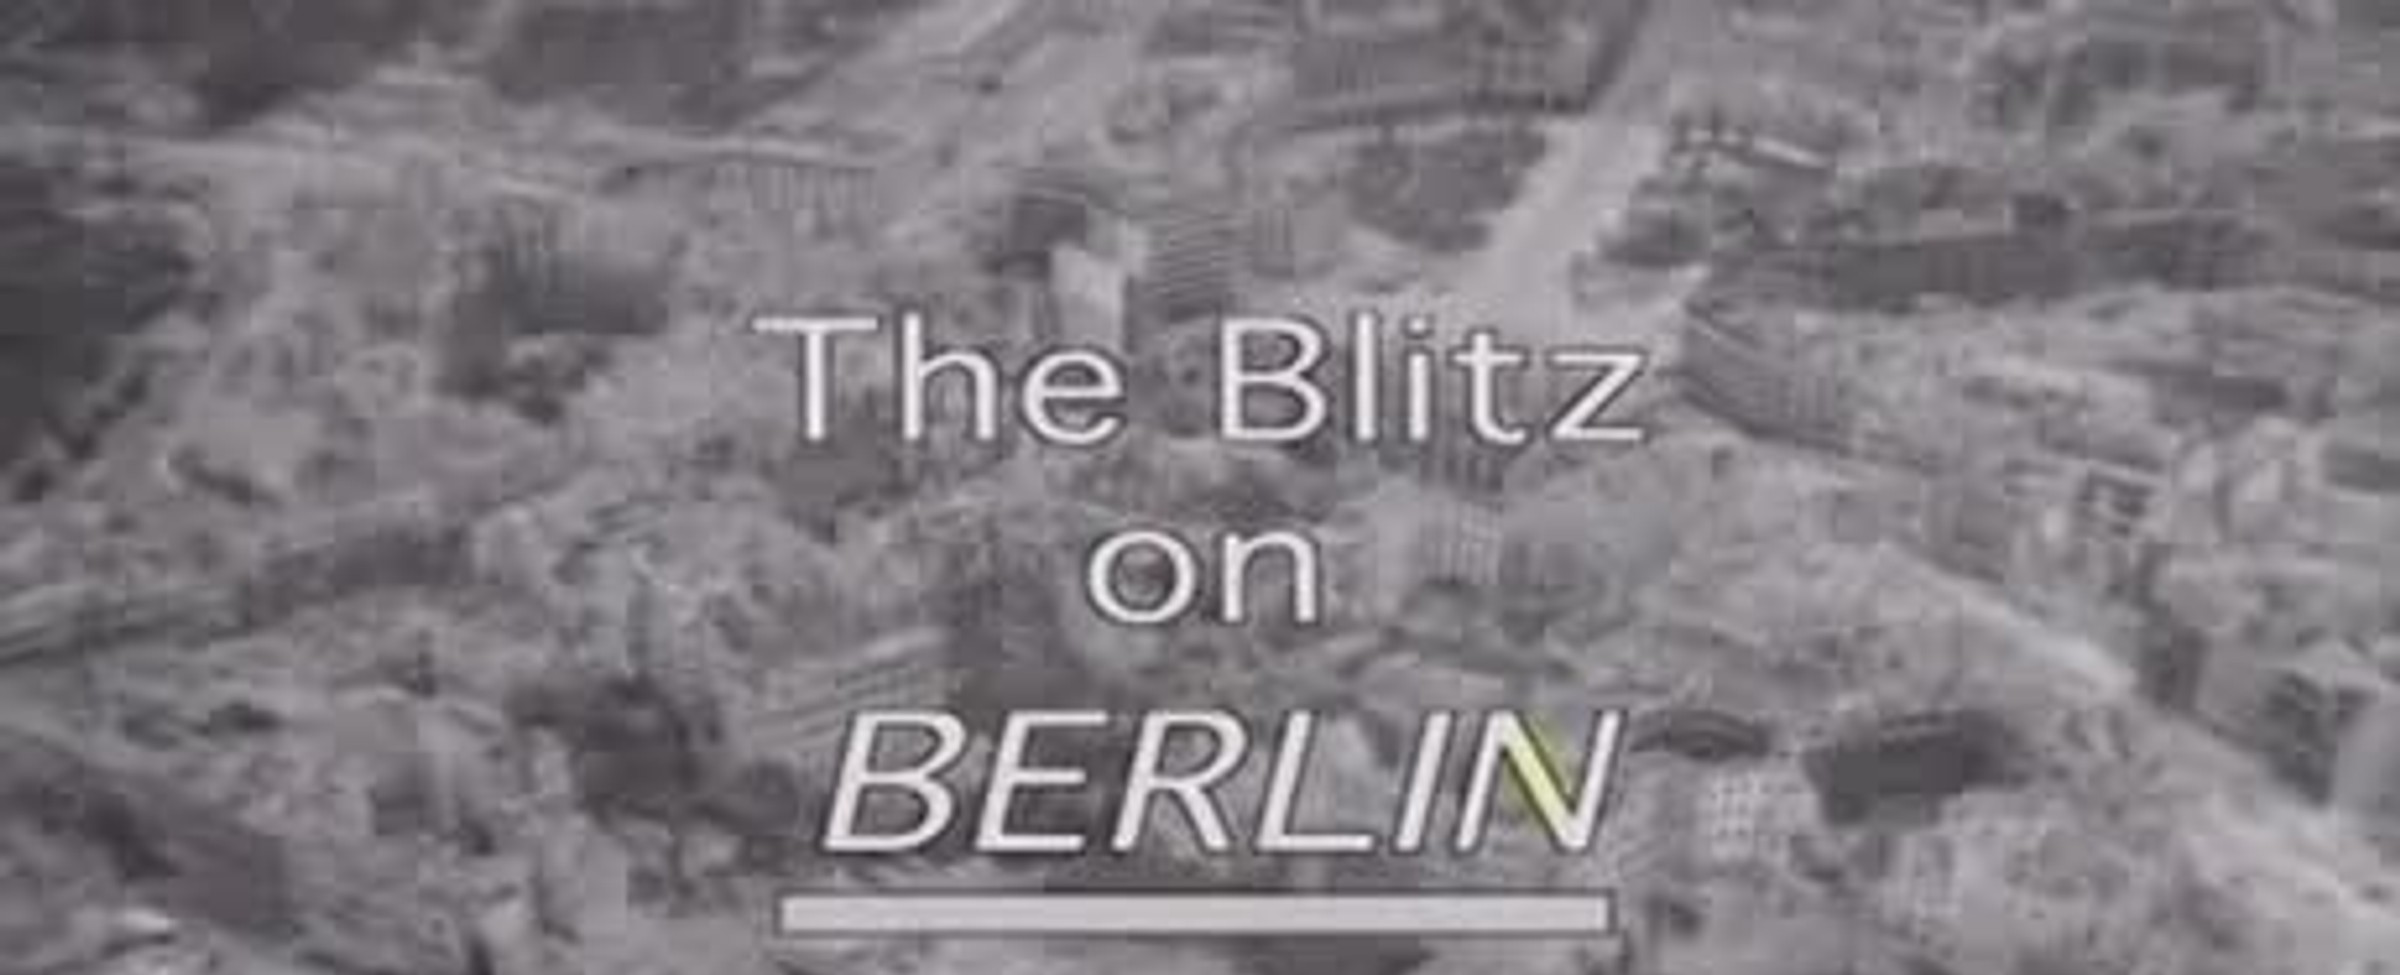 Bombardování Berlína